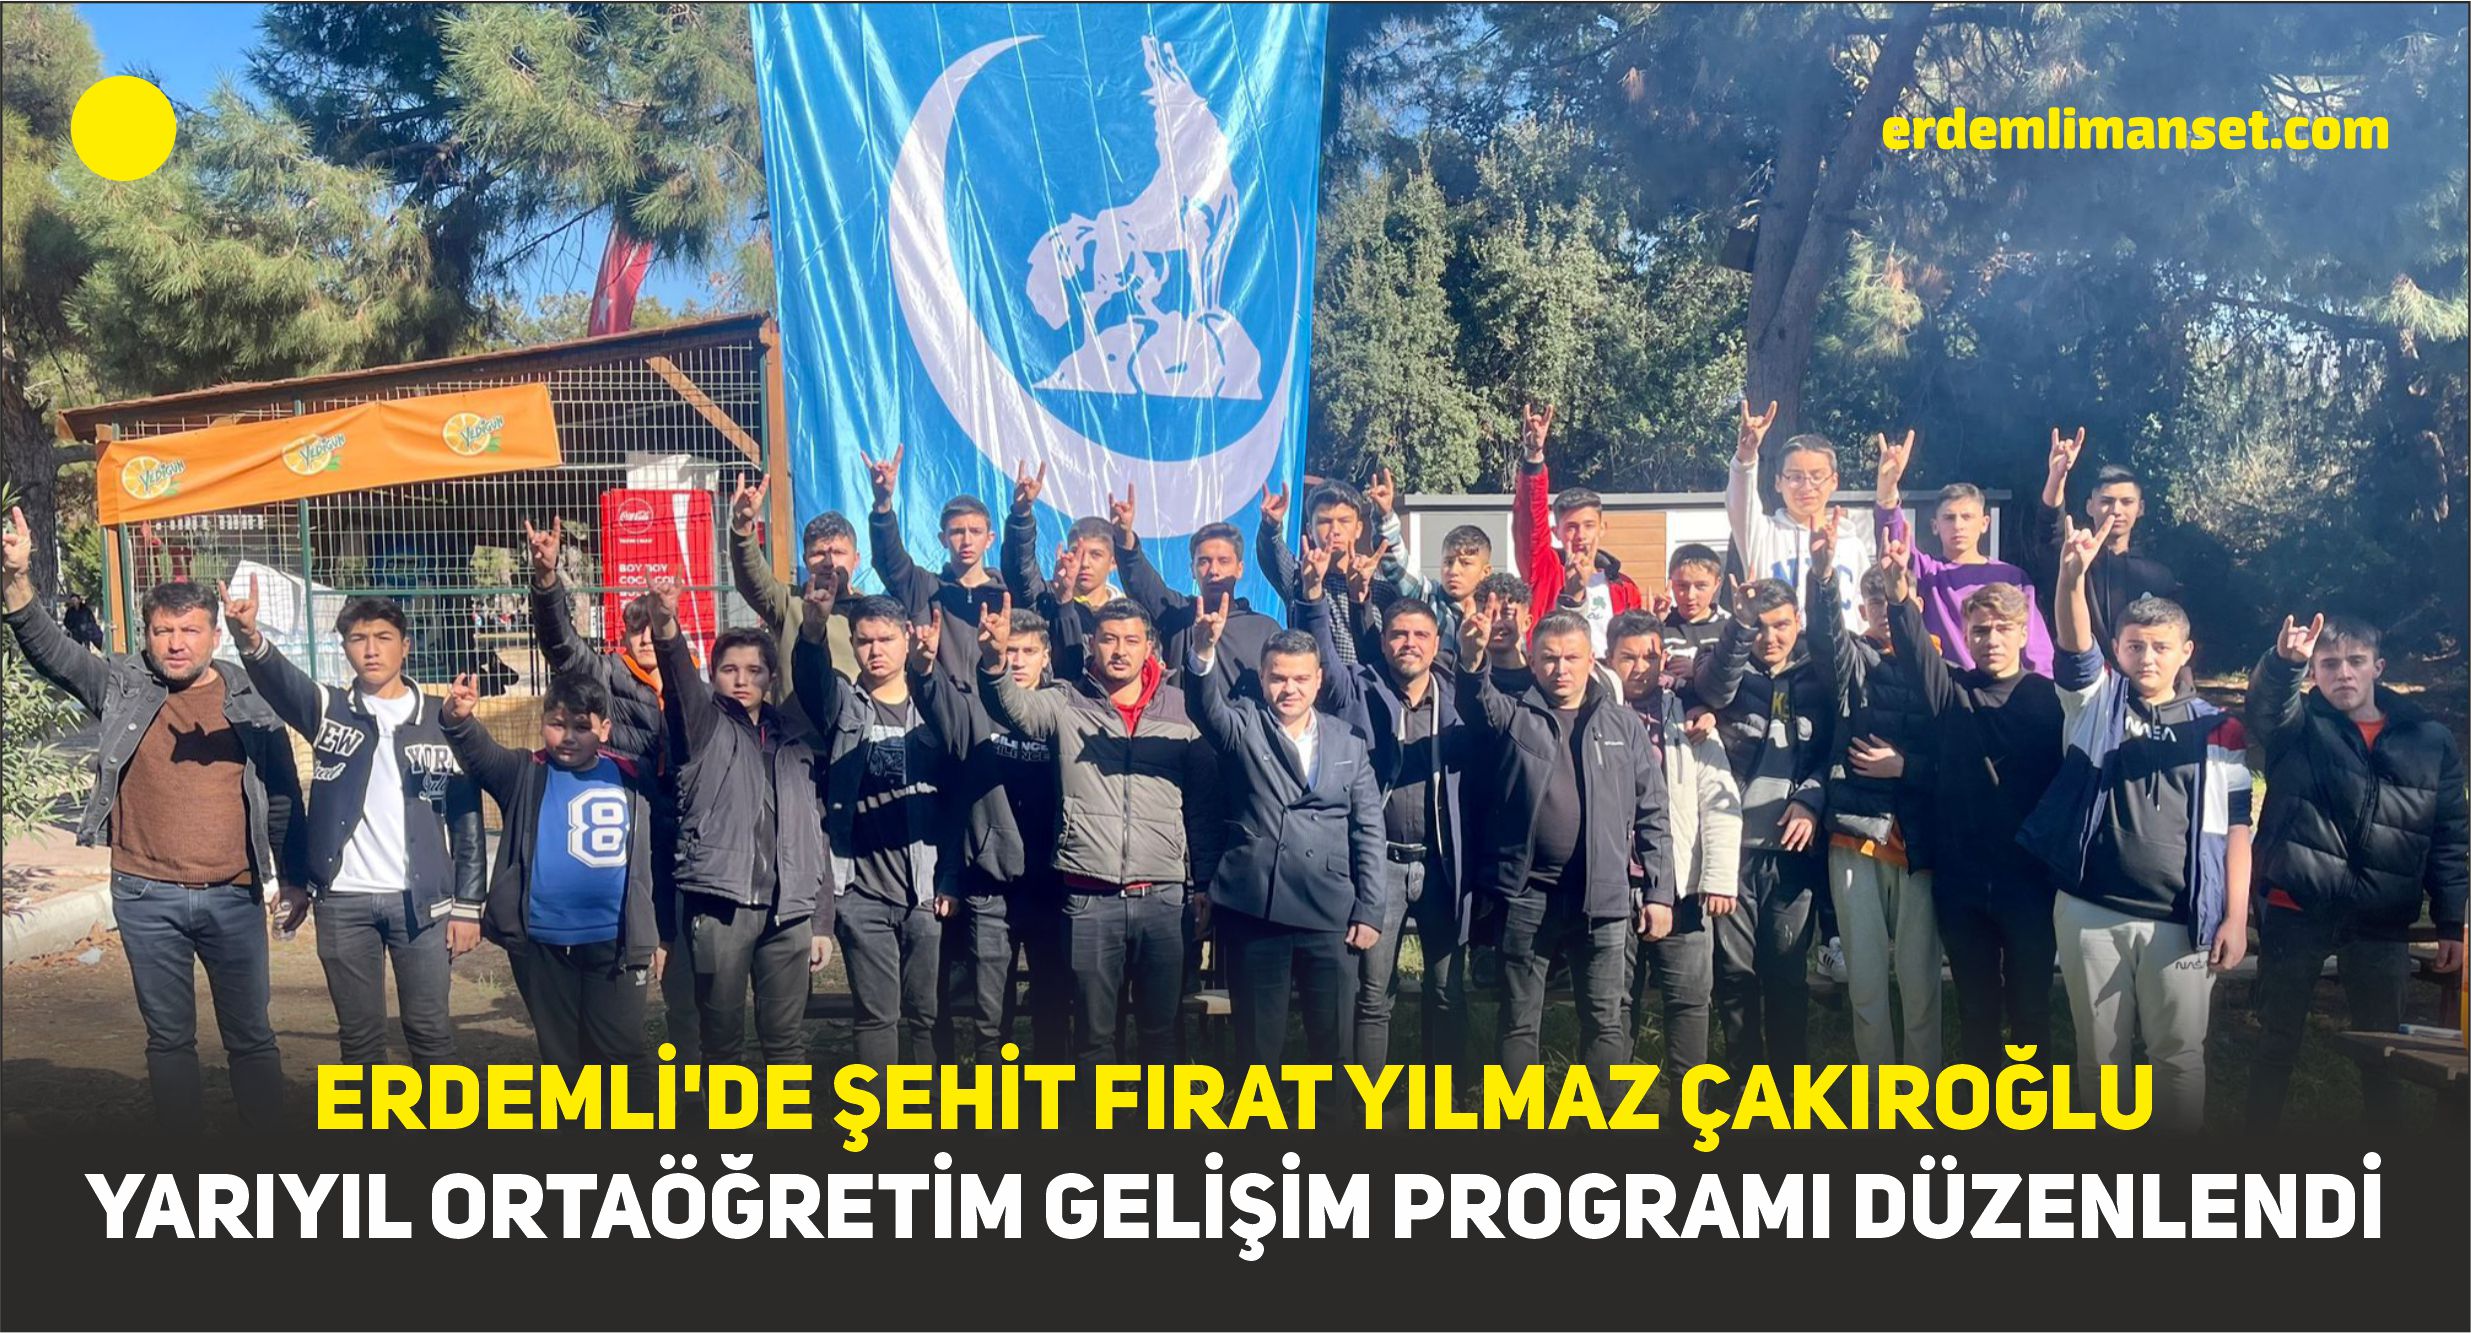 Erdemli’de Şehit Fırat Yılmaz Çakıroğlu Yarıyıl Ortaöğretim Gelişim Programı